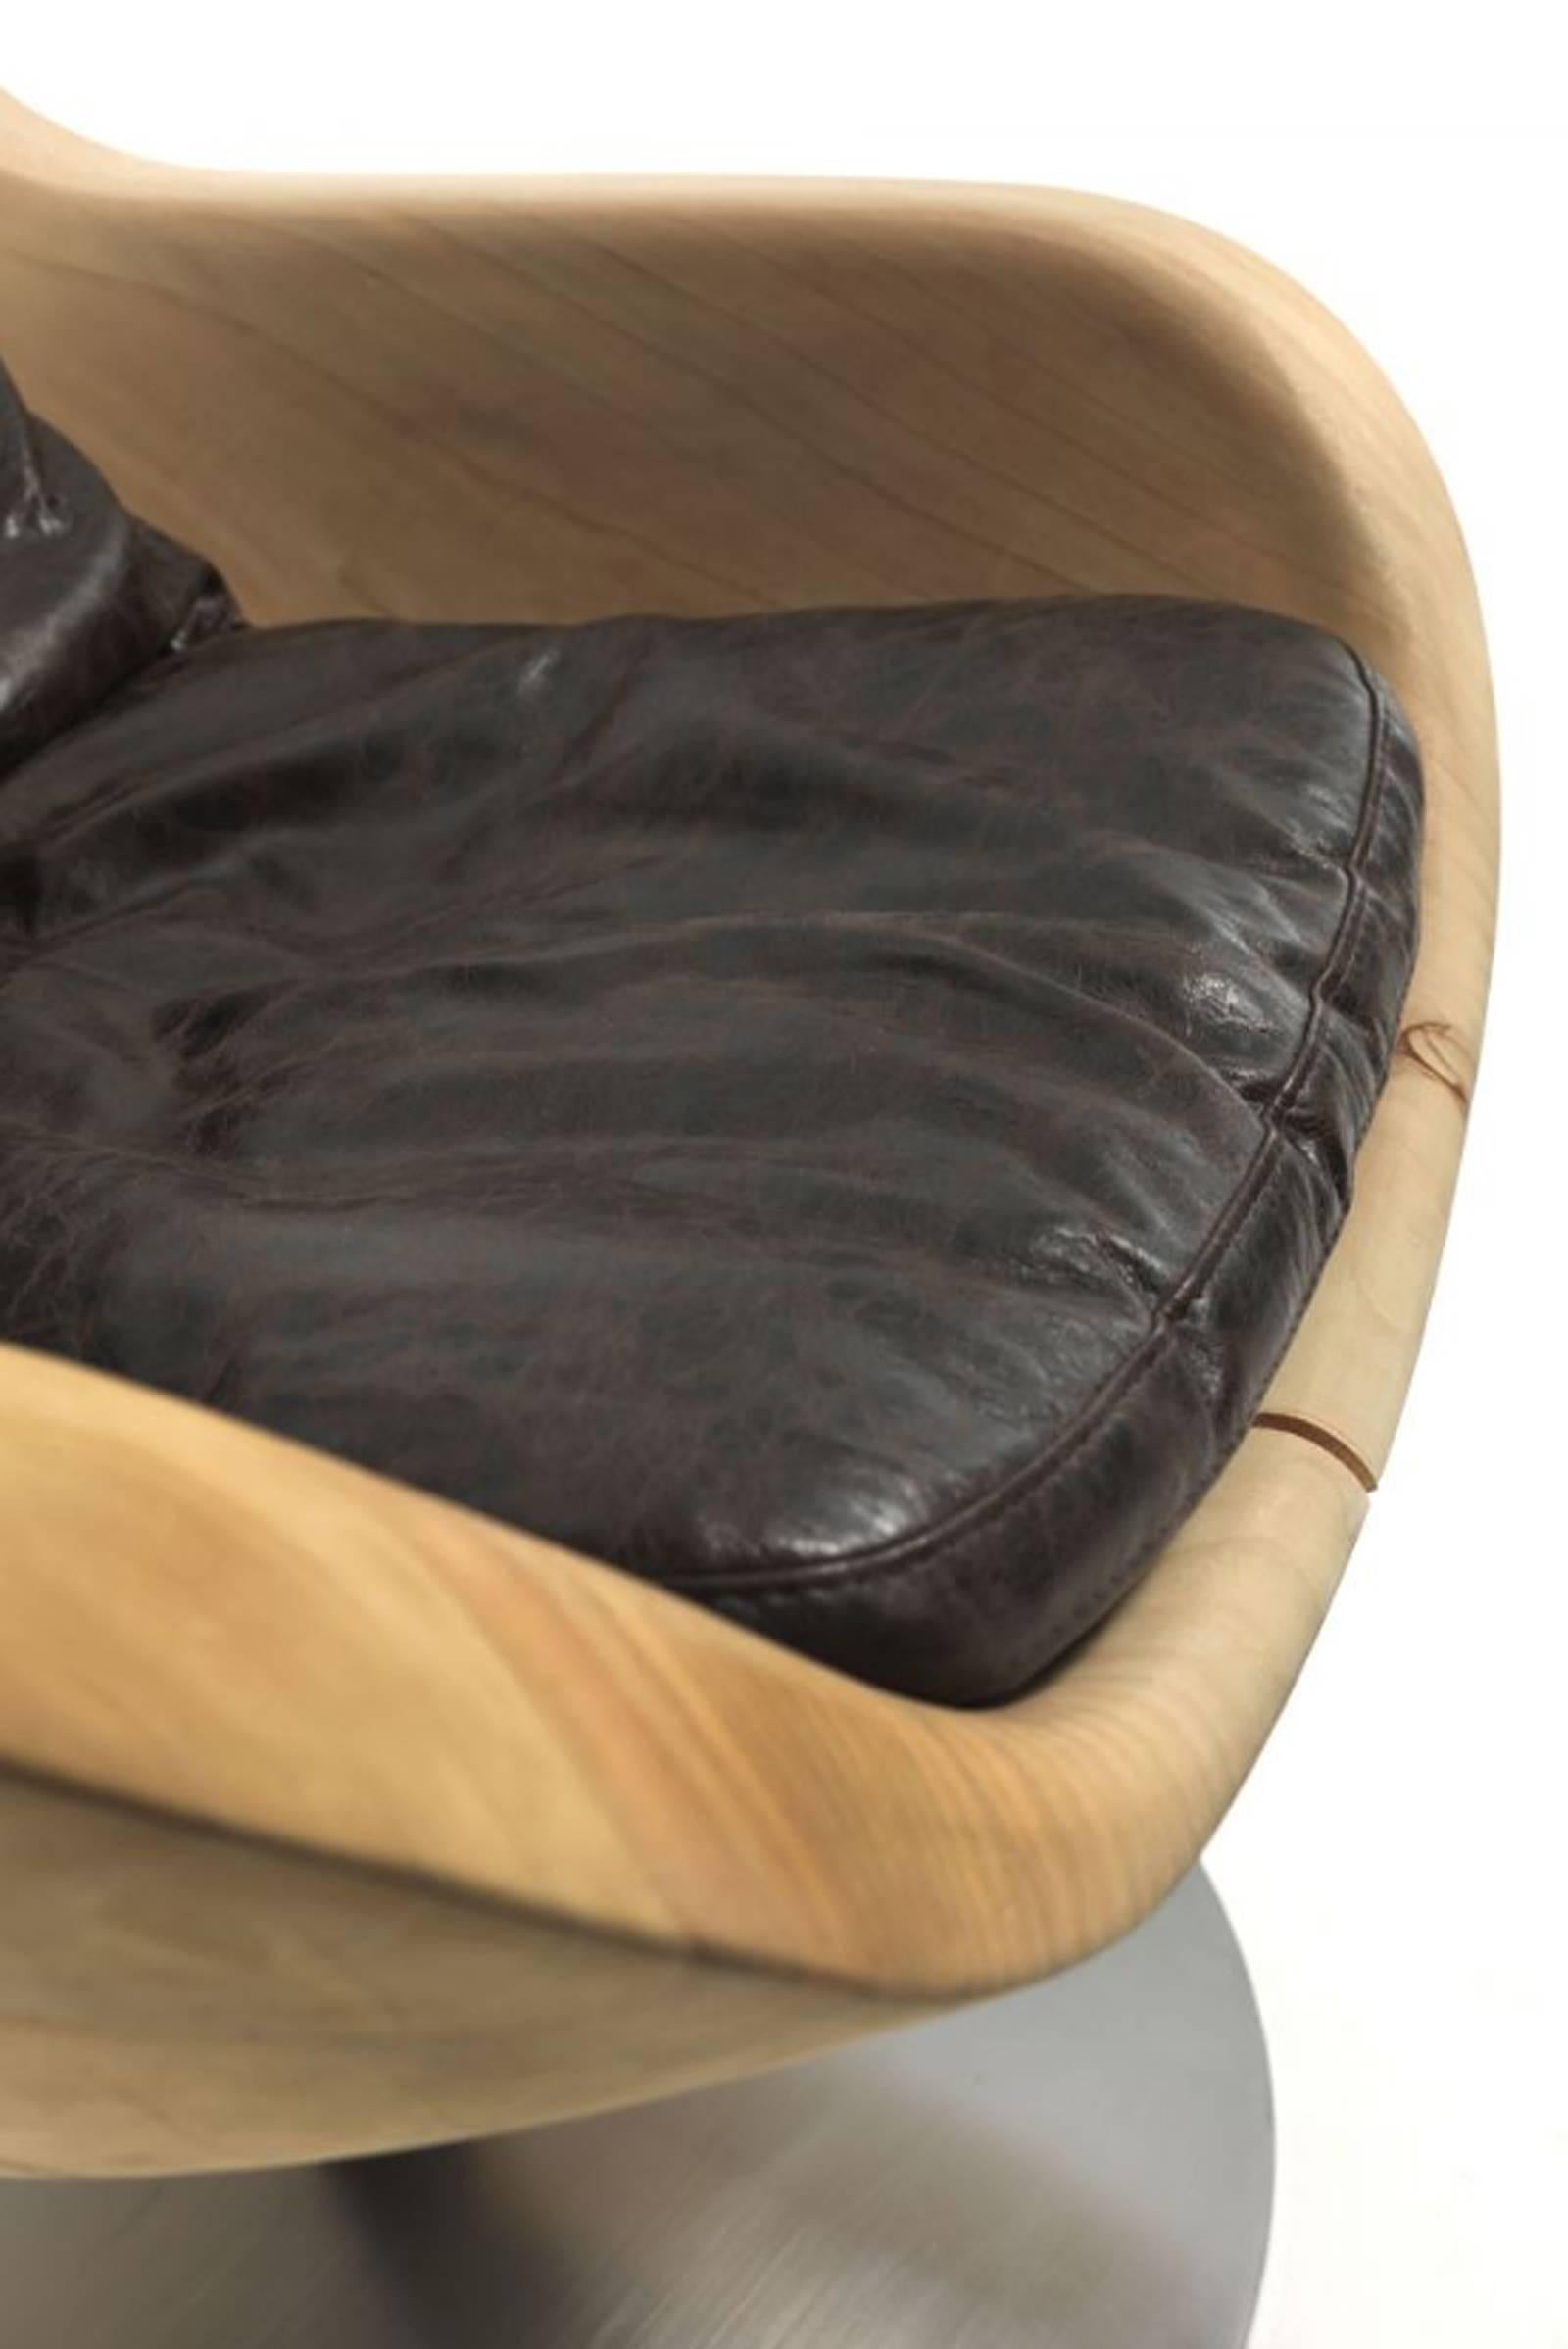 Leather Lory Cedar Armchair For Sale